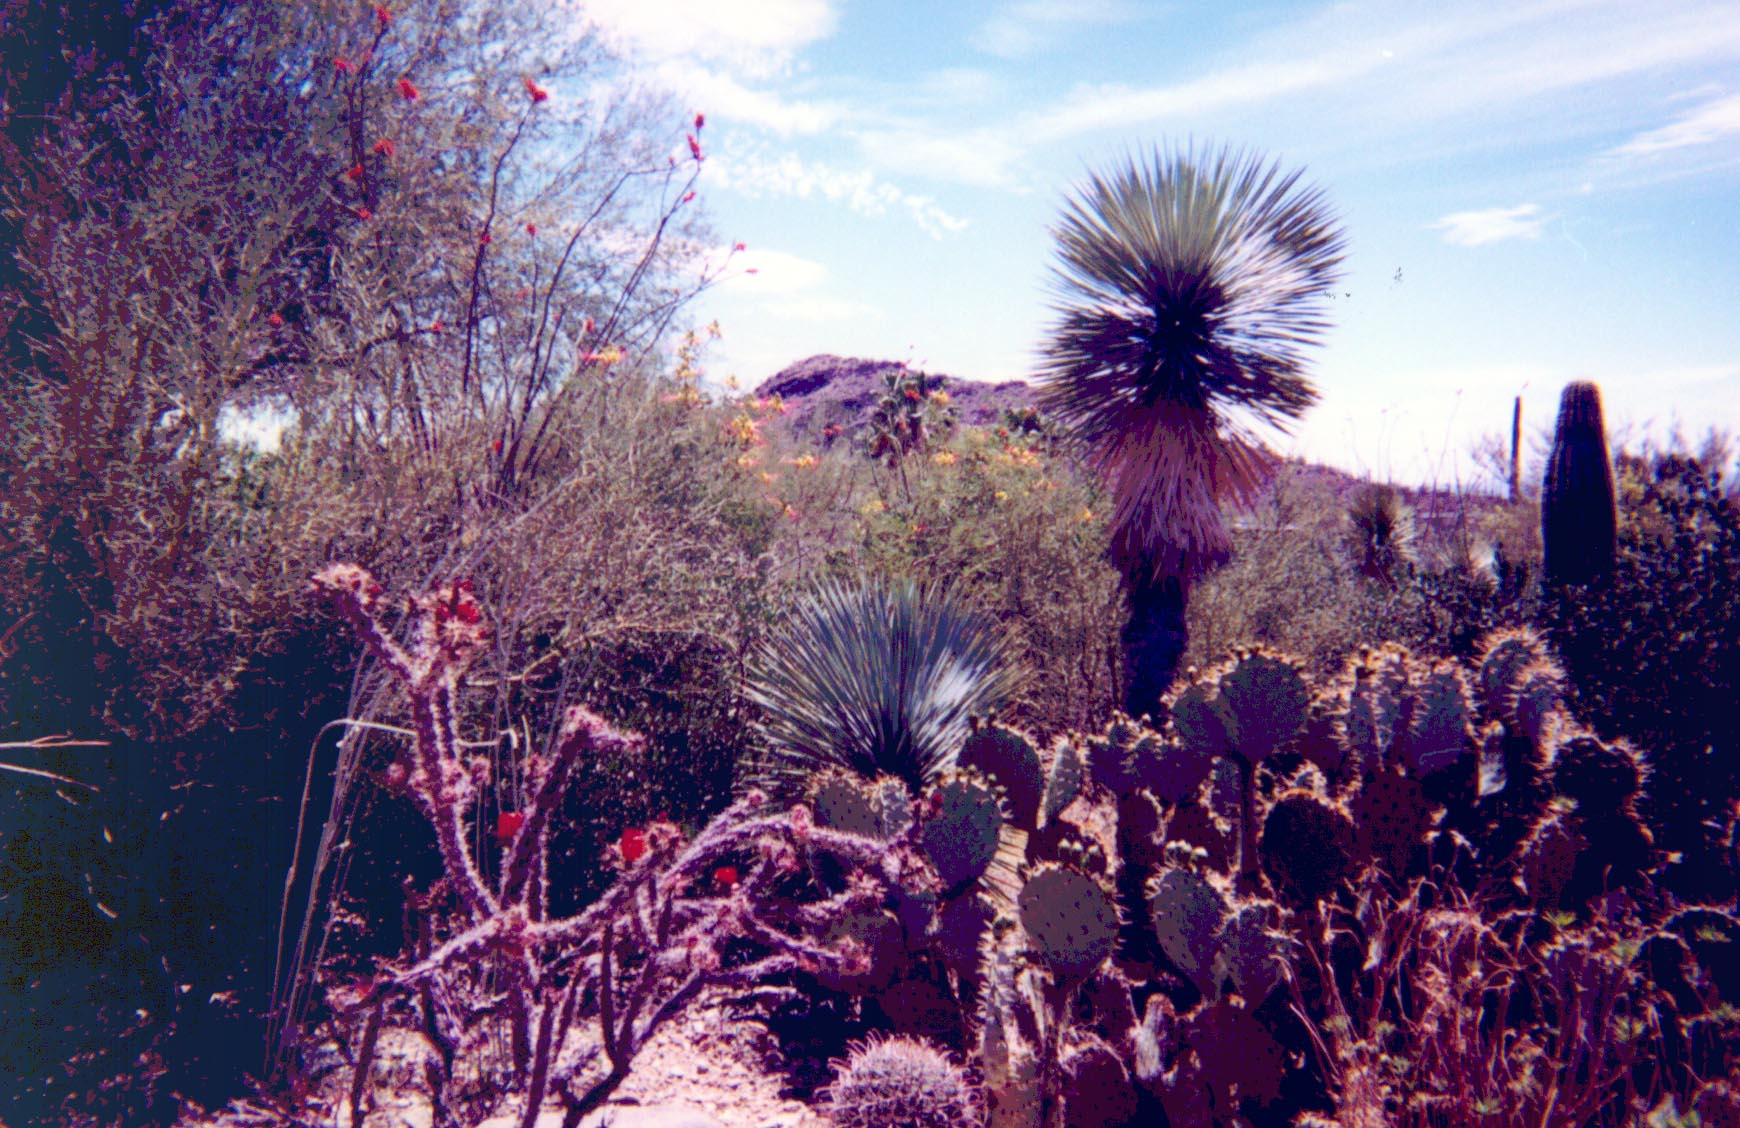 tucson_cactus